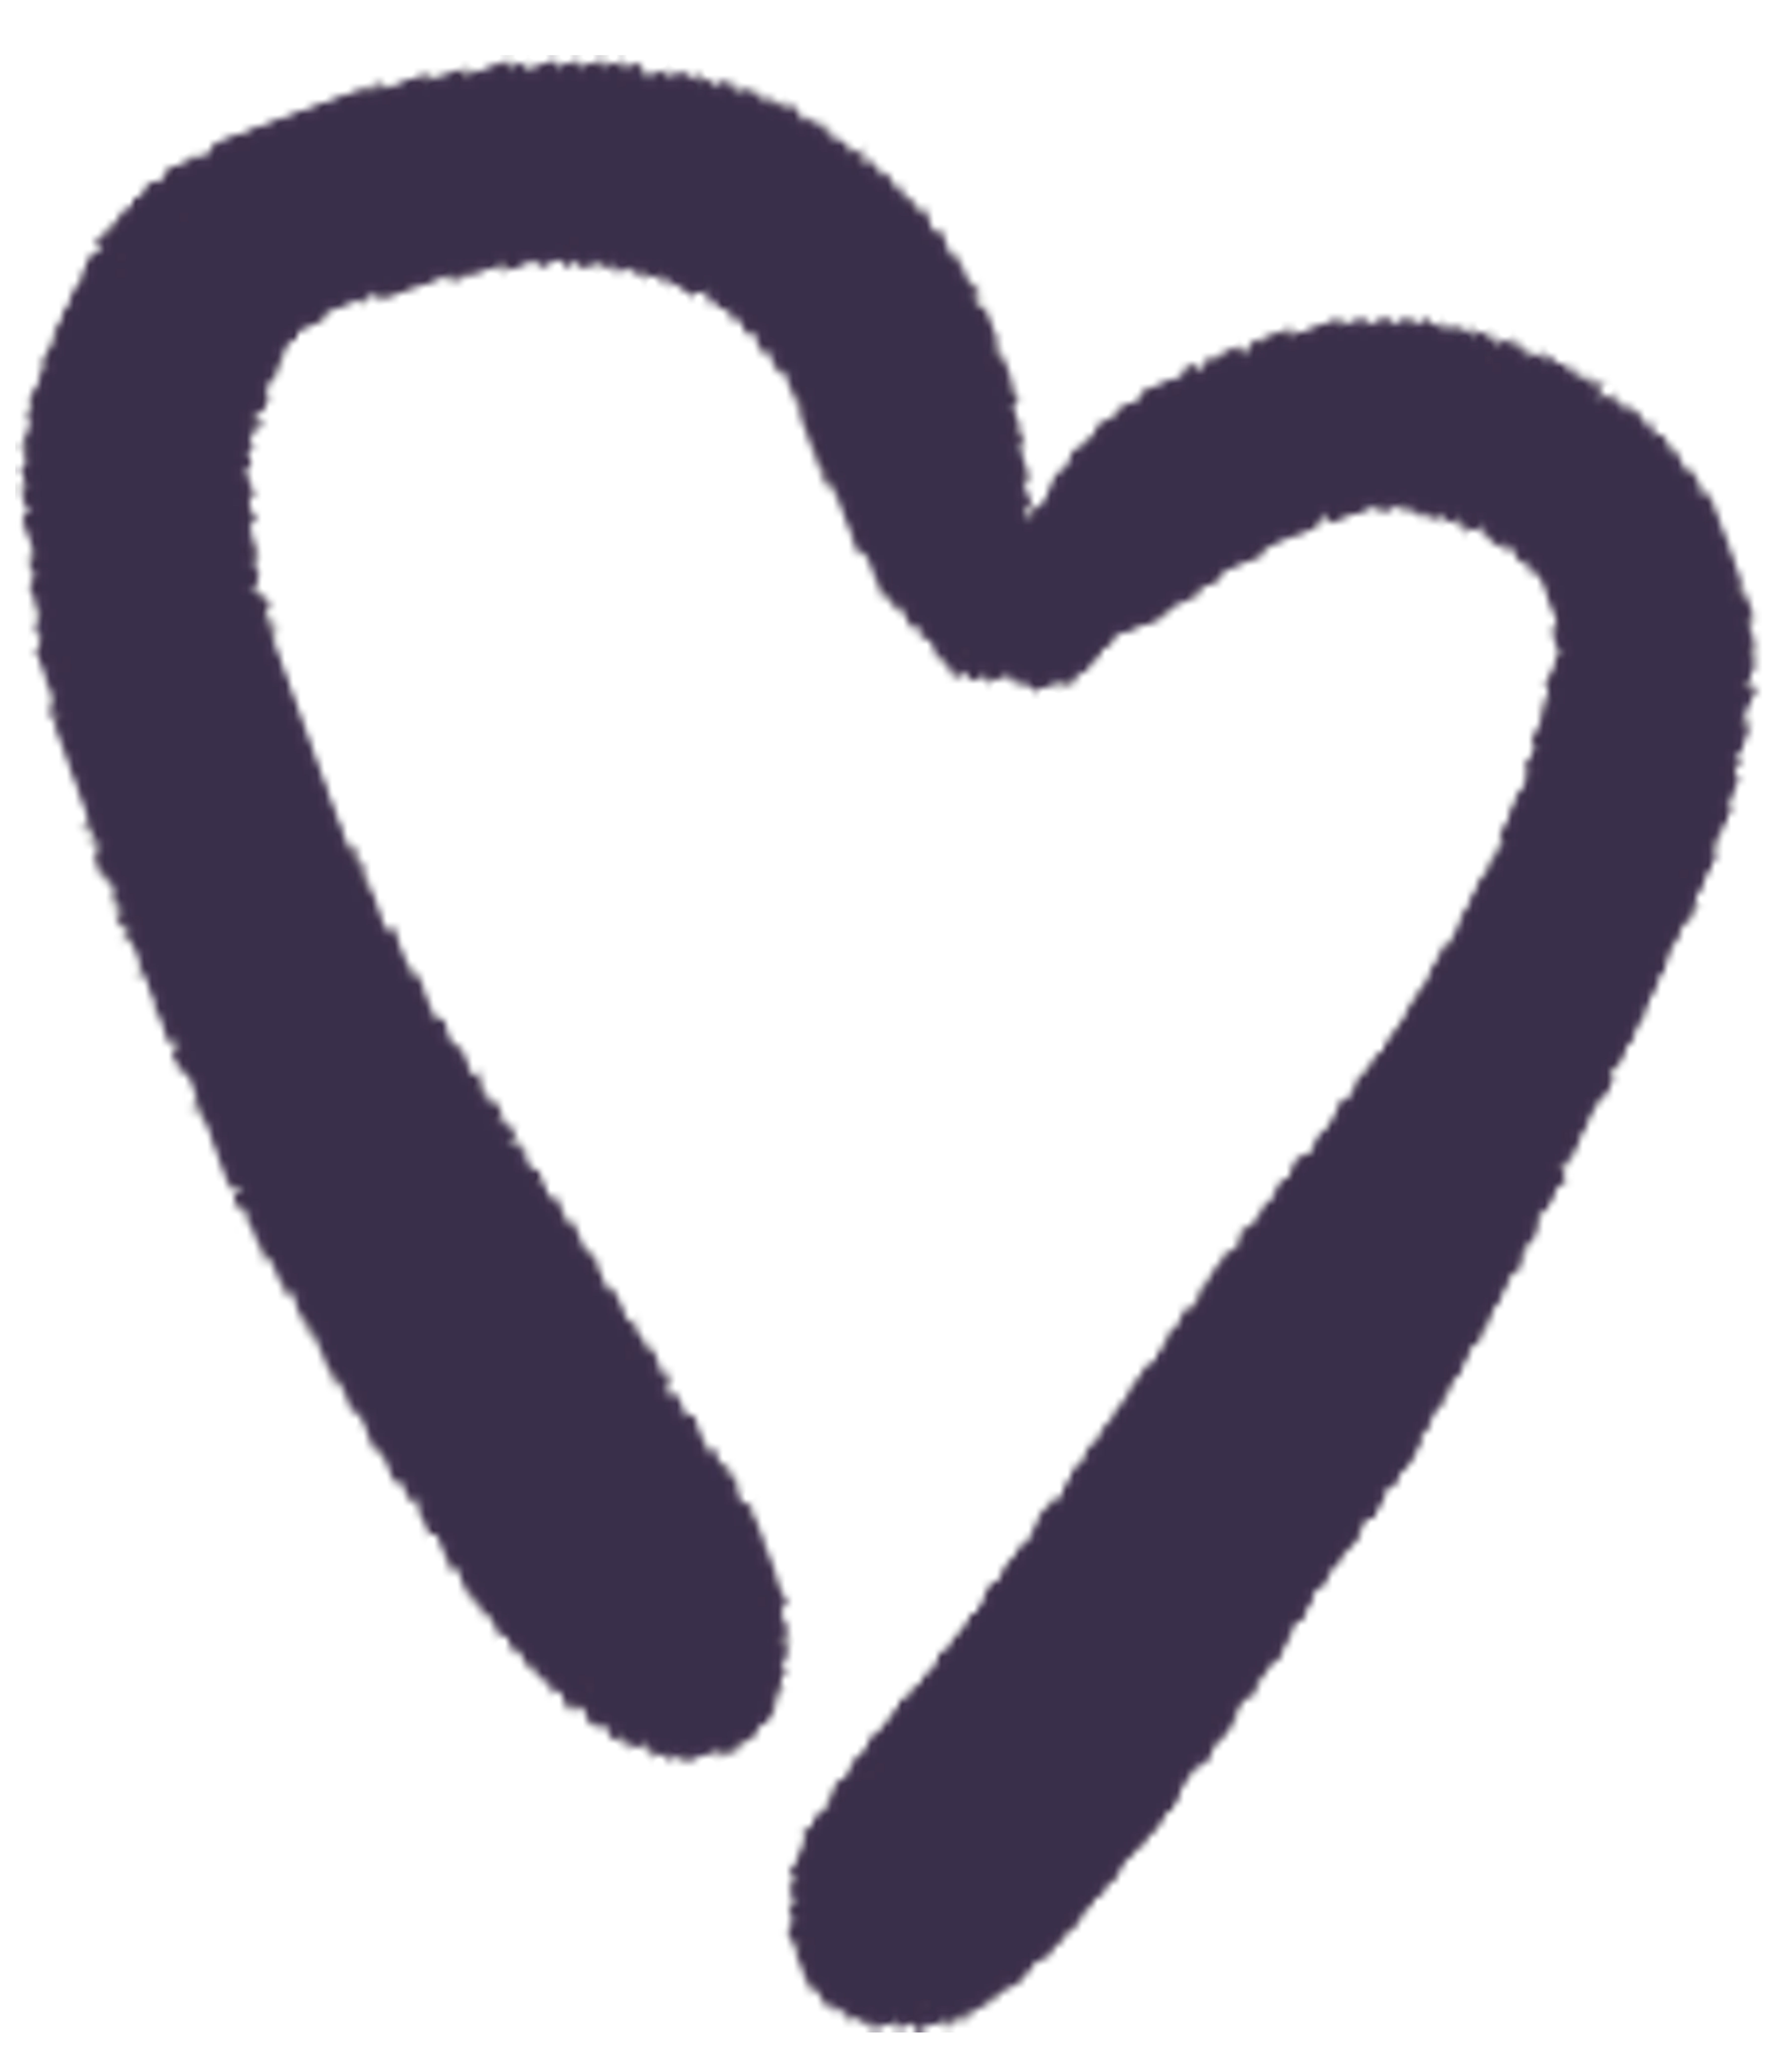 A single purple heart